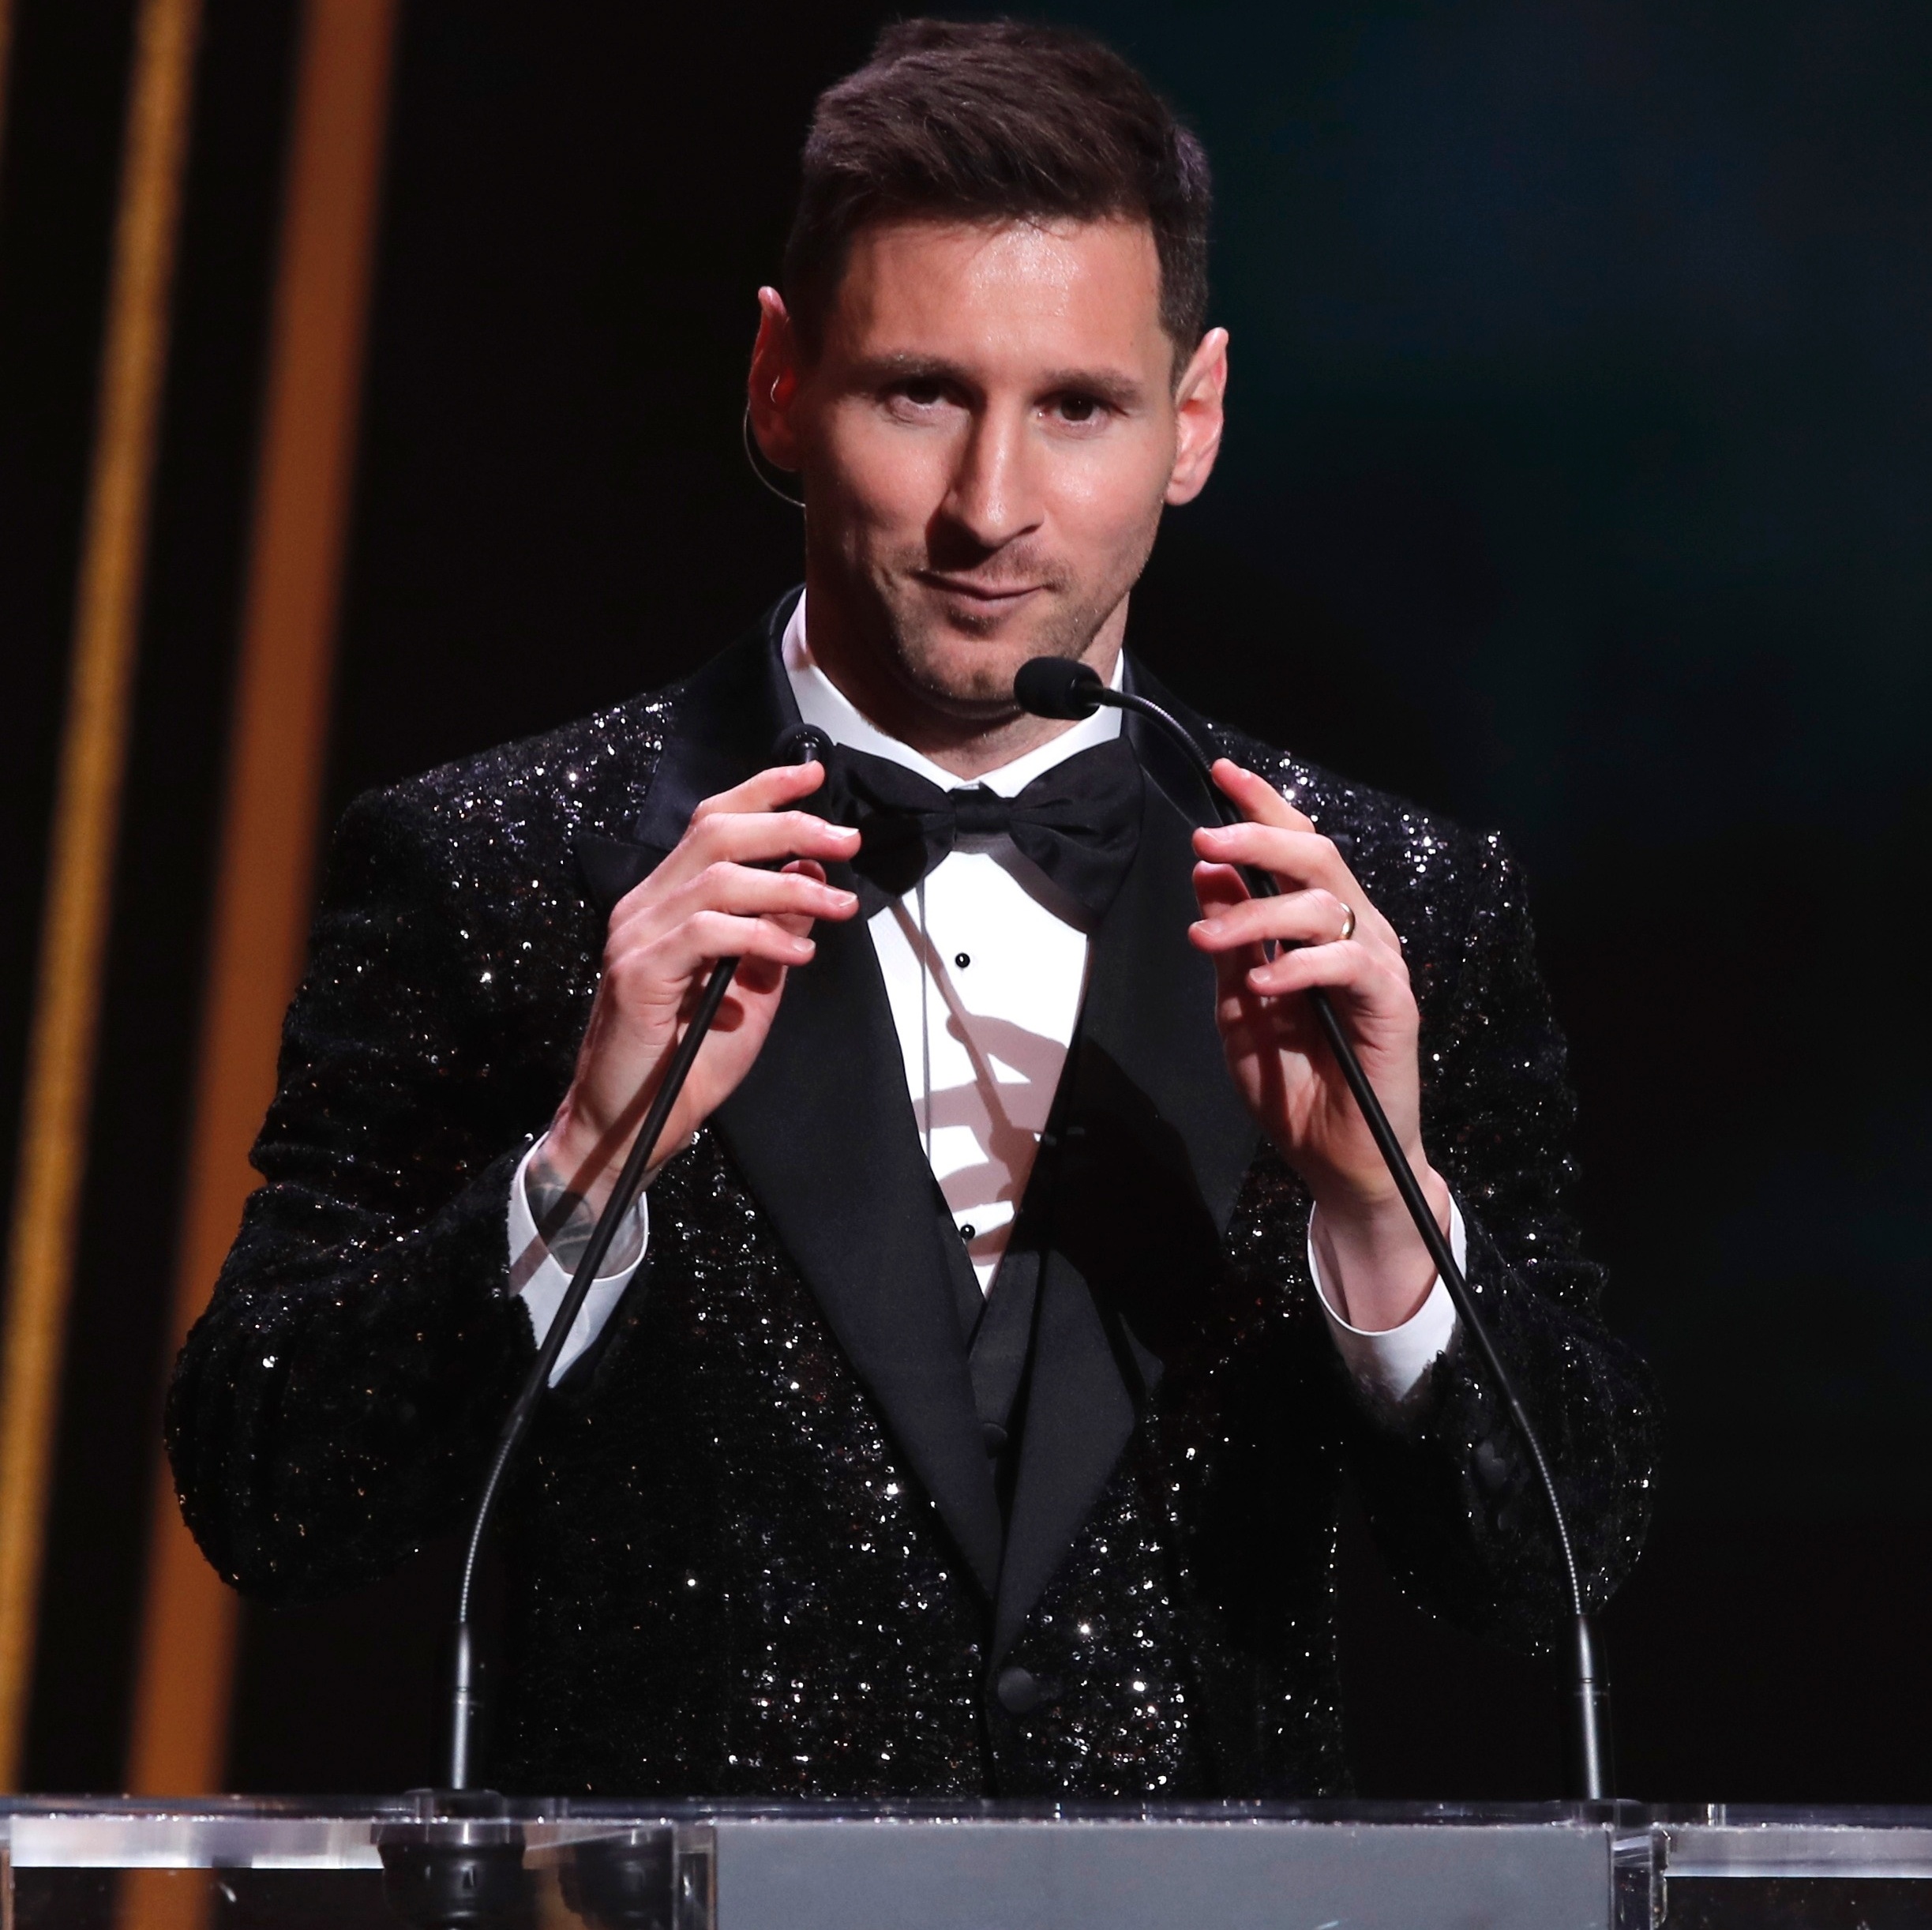 Bola de Ouro 2023: Messi leva o prêmio de melhor jogador do mundo pela  oitava vez - Netflu - Futebol Internacional